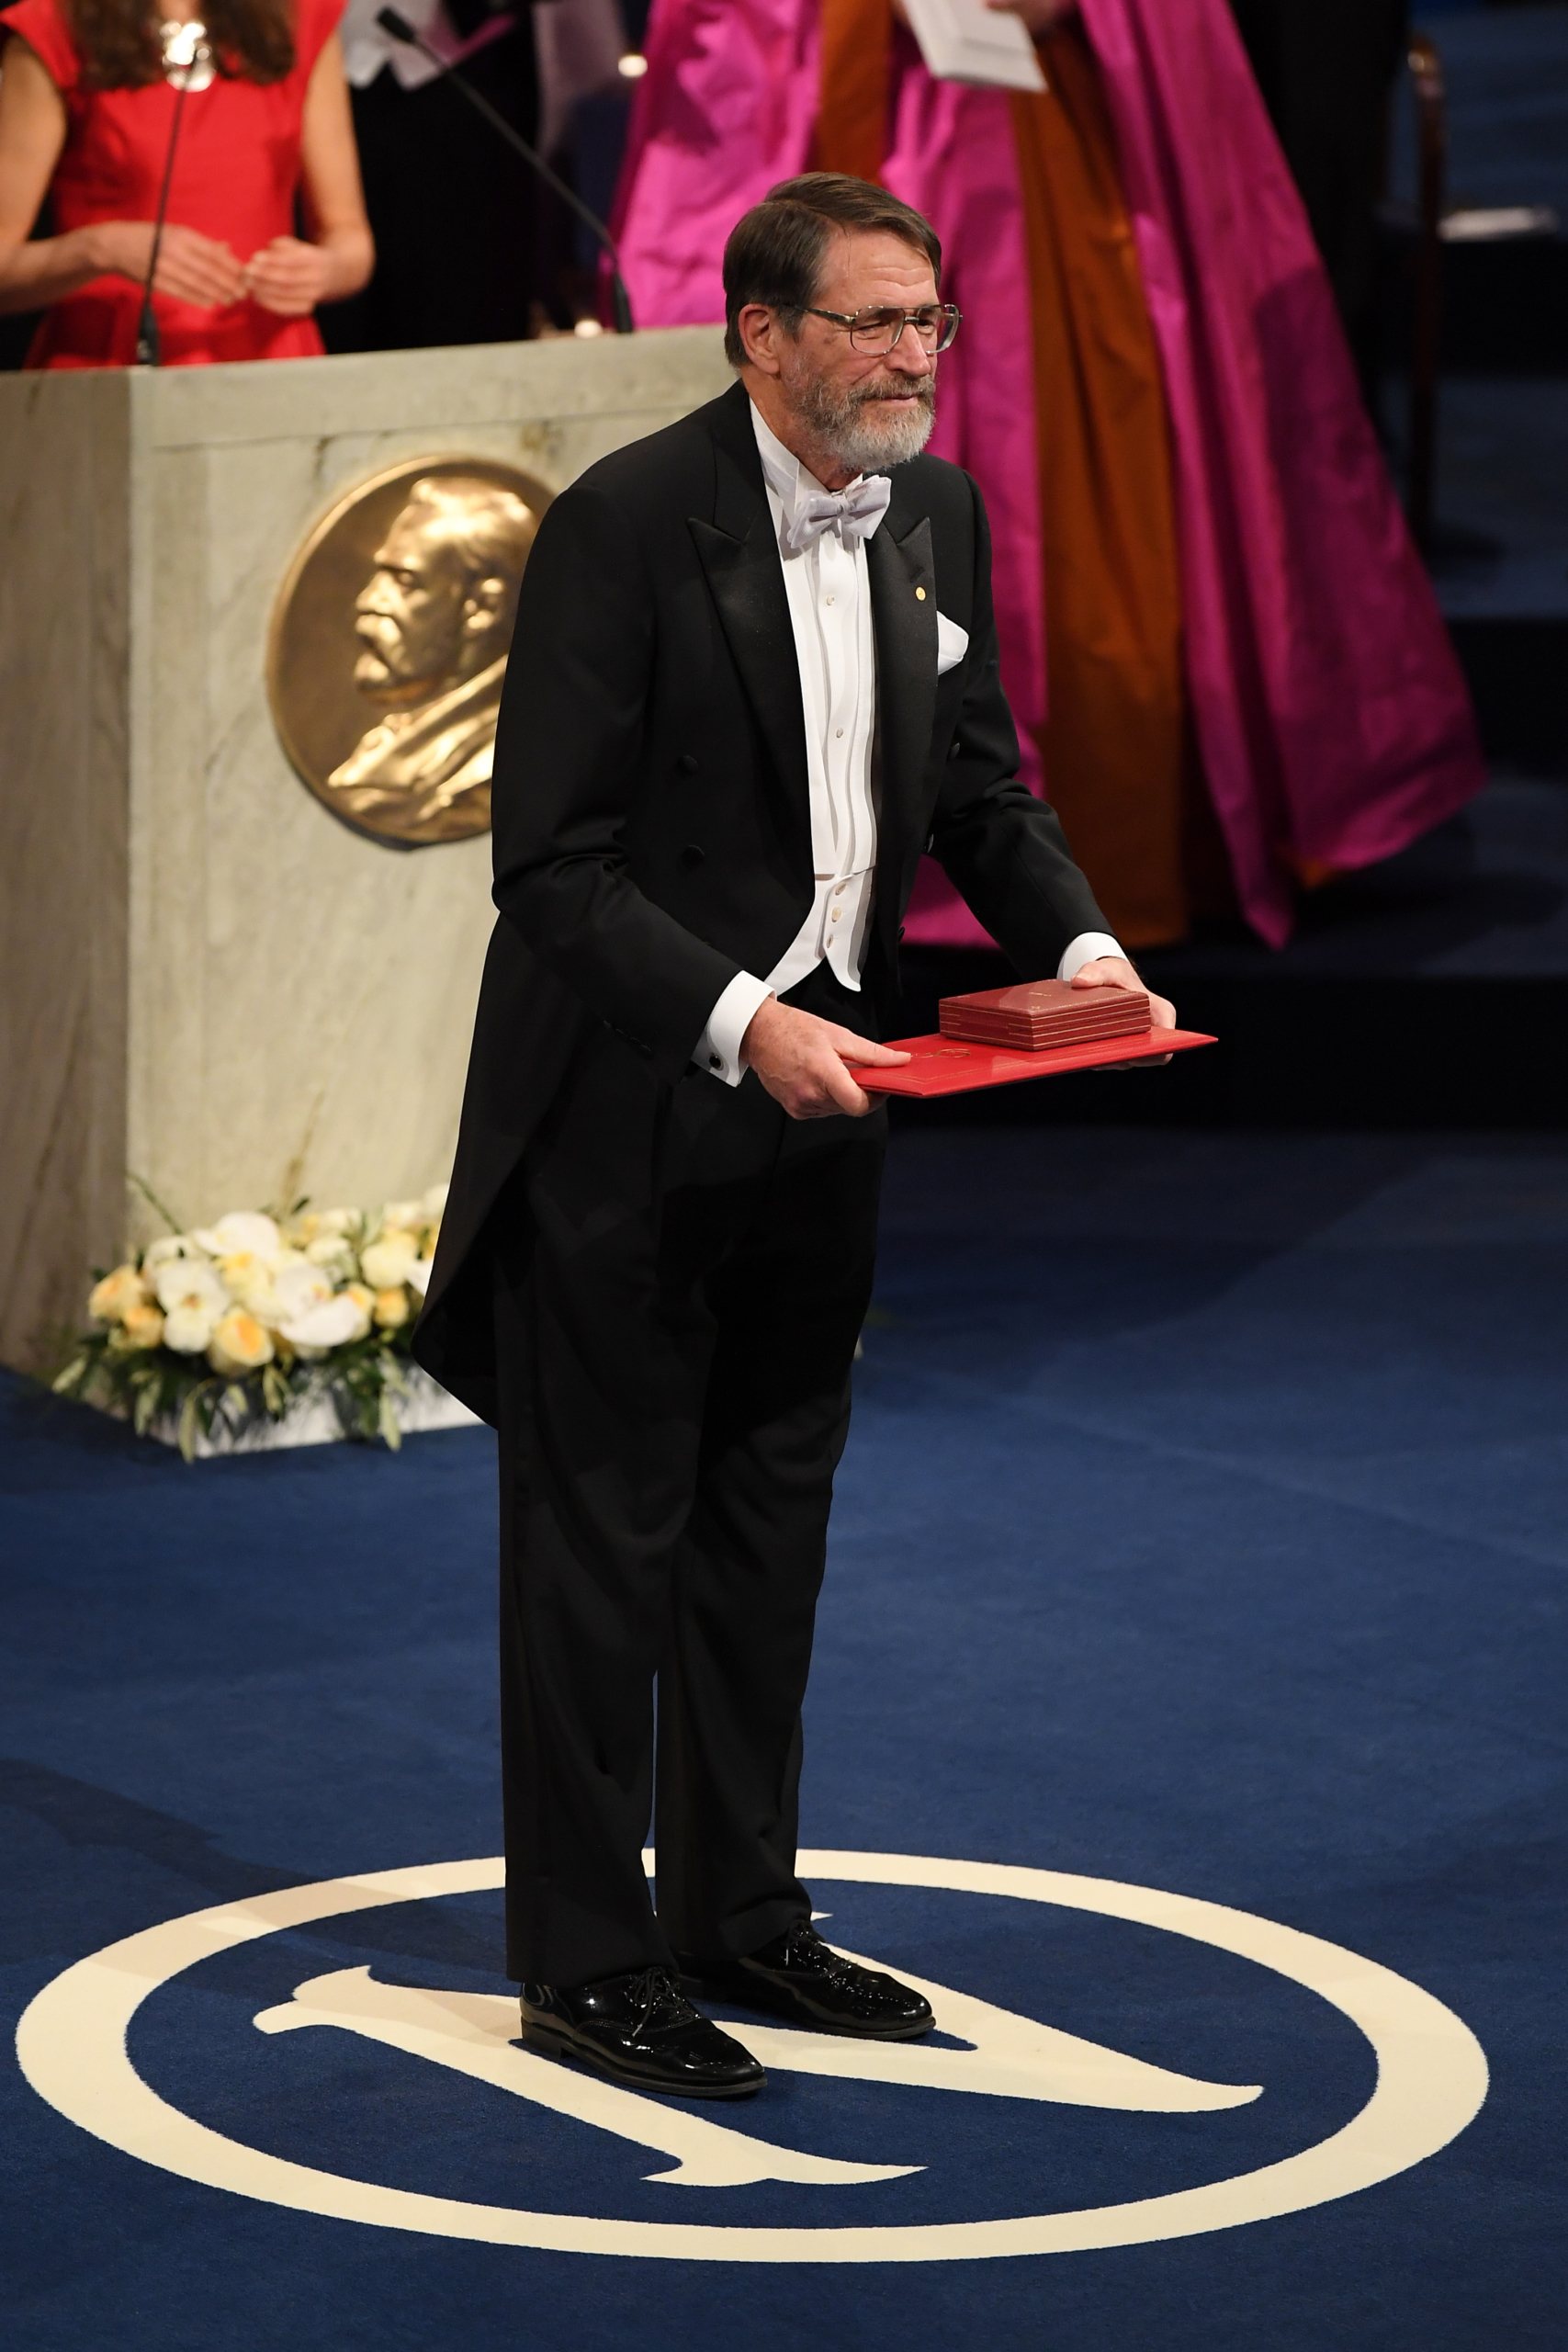 The Nobel Prize Award Ceremony 2018